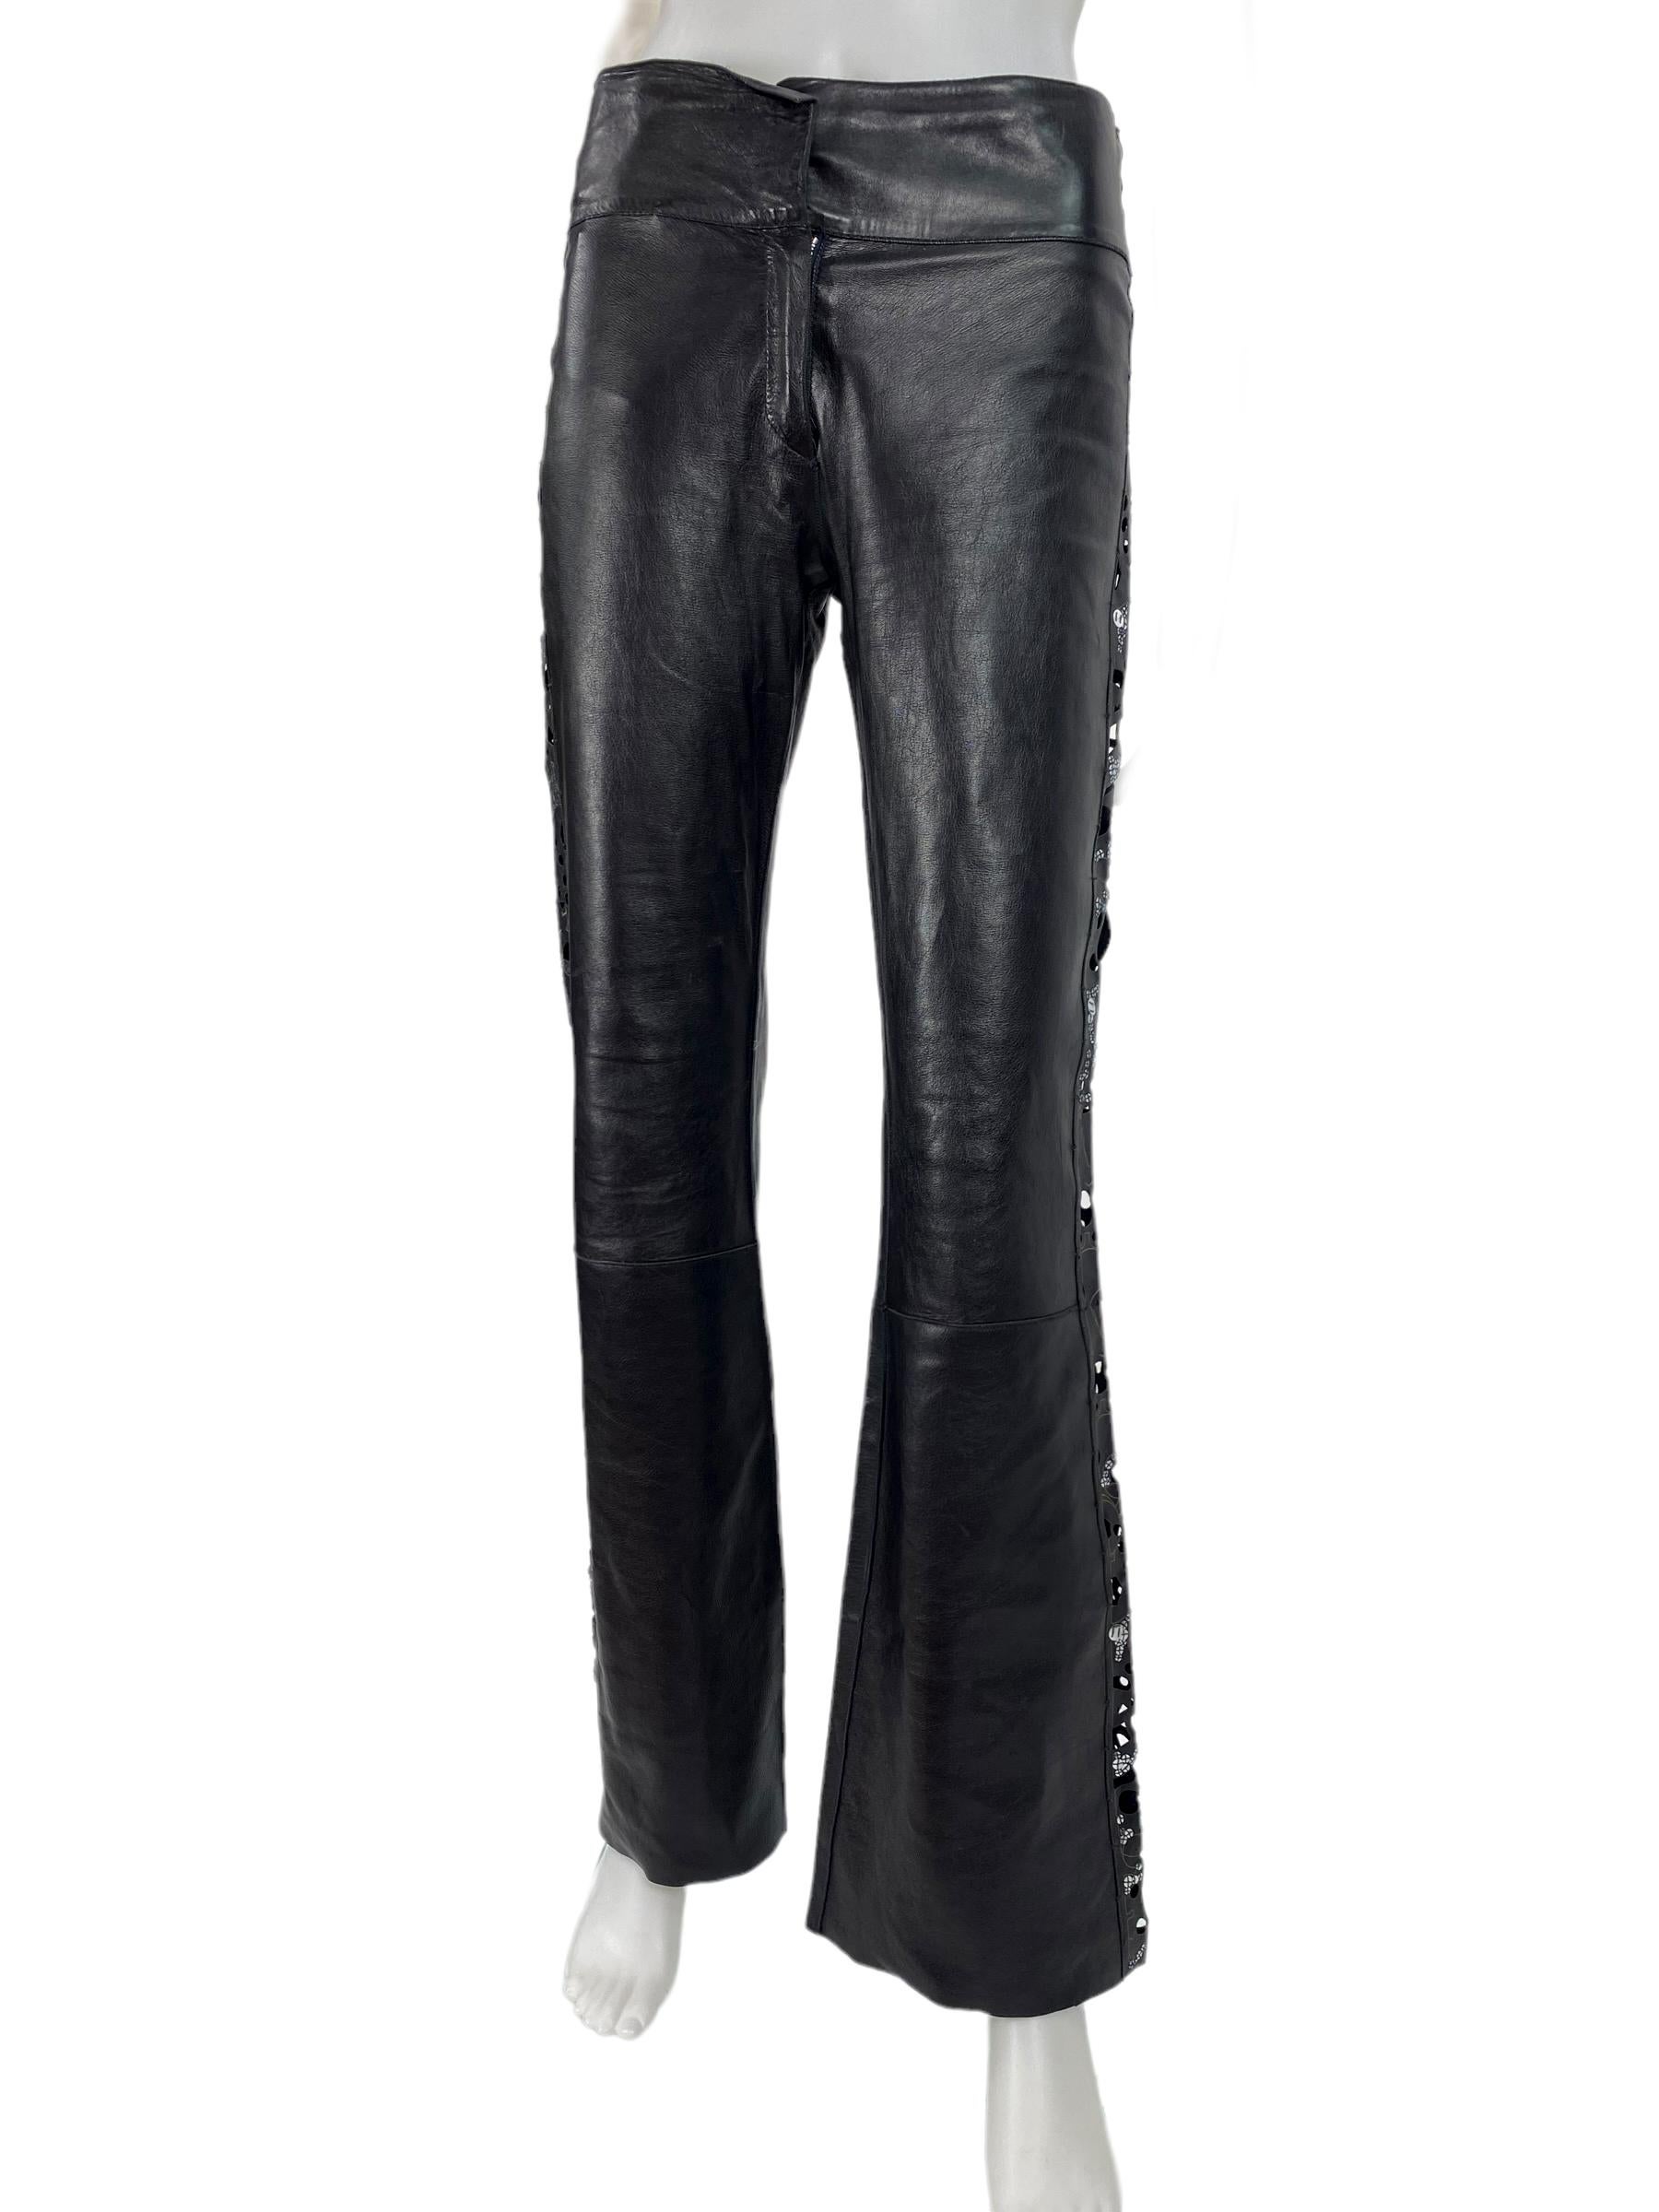 Karl Lagerfeld für Fendi Schwarze Lederhose mit Verzierungen 
Vintage S/S 2003 Collection'S
Italienisch Größe 38
100% Leder, Laserschnitt, Pailletten.
Maße: Gesamtlänge - 41 Zoll, Taille - 30